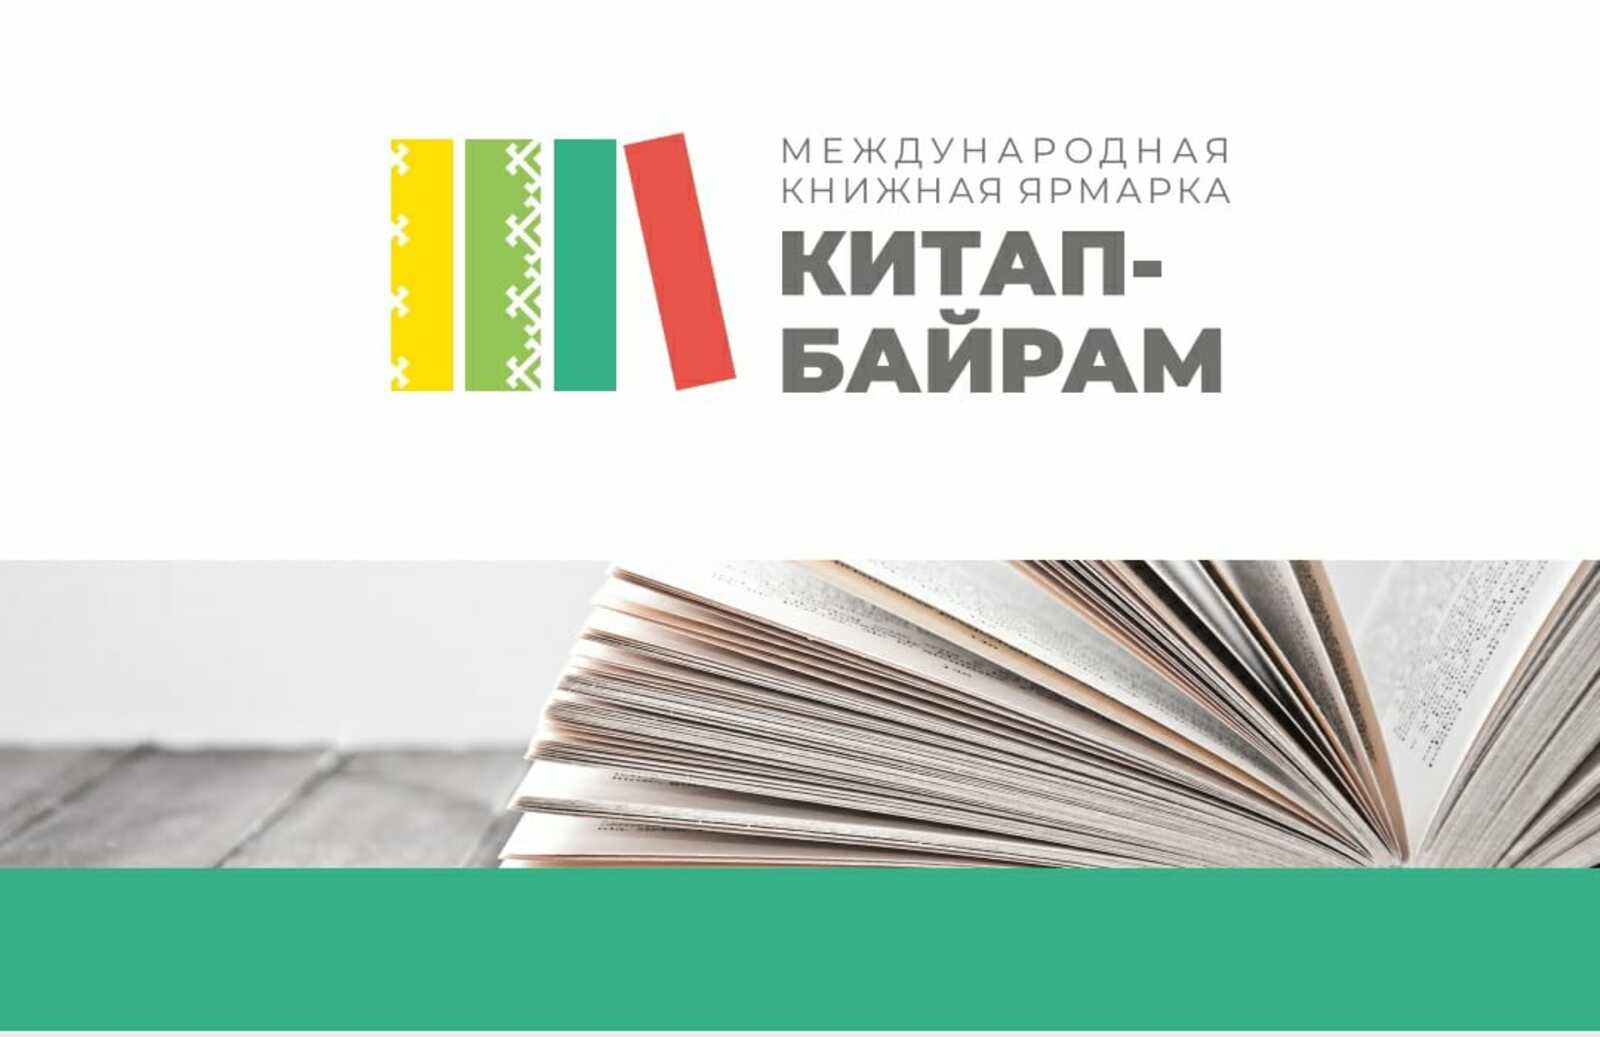 Члены Союза писателей Башкирии высказались об актуальности проекта "Китап-байрам"